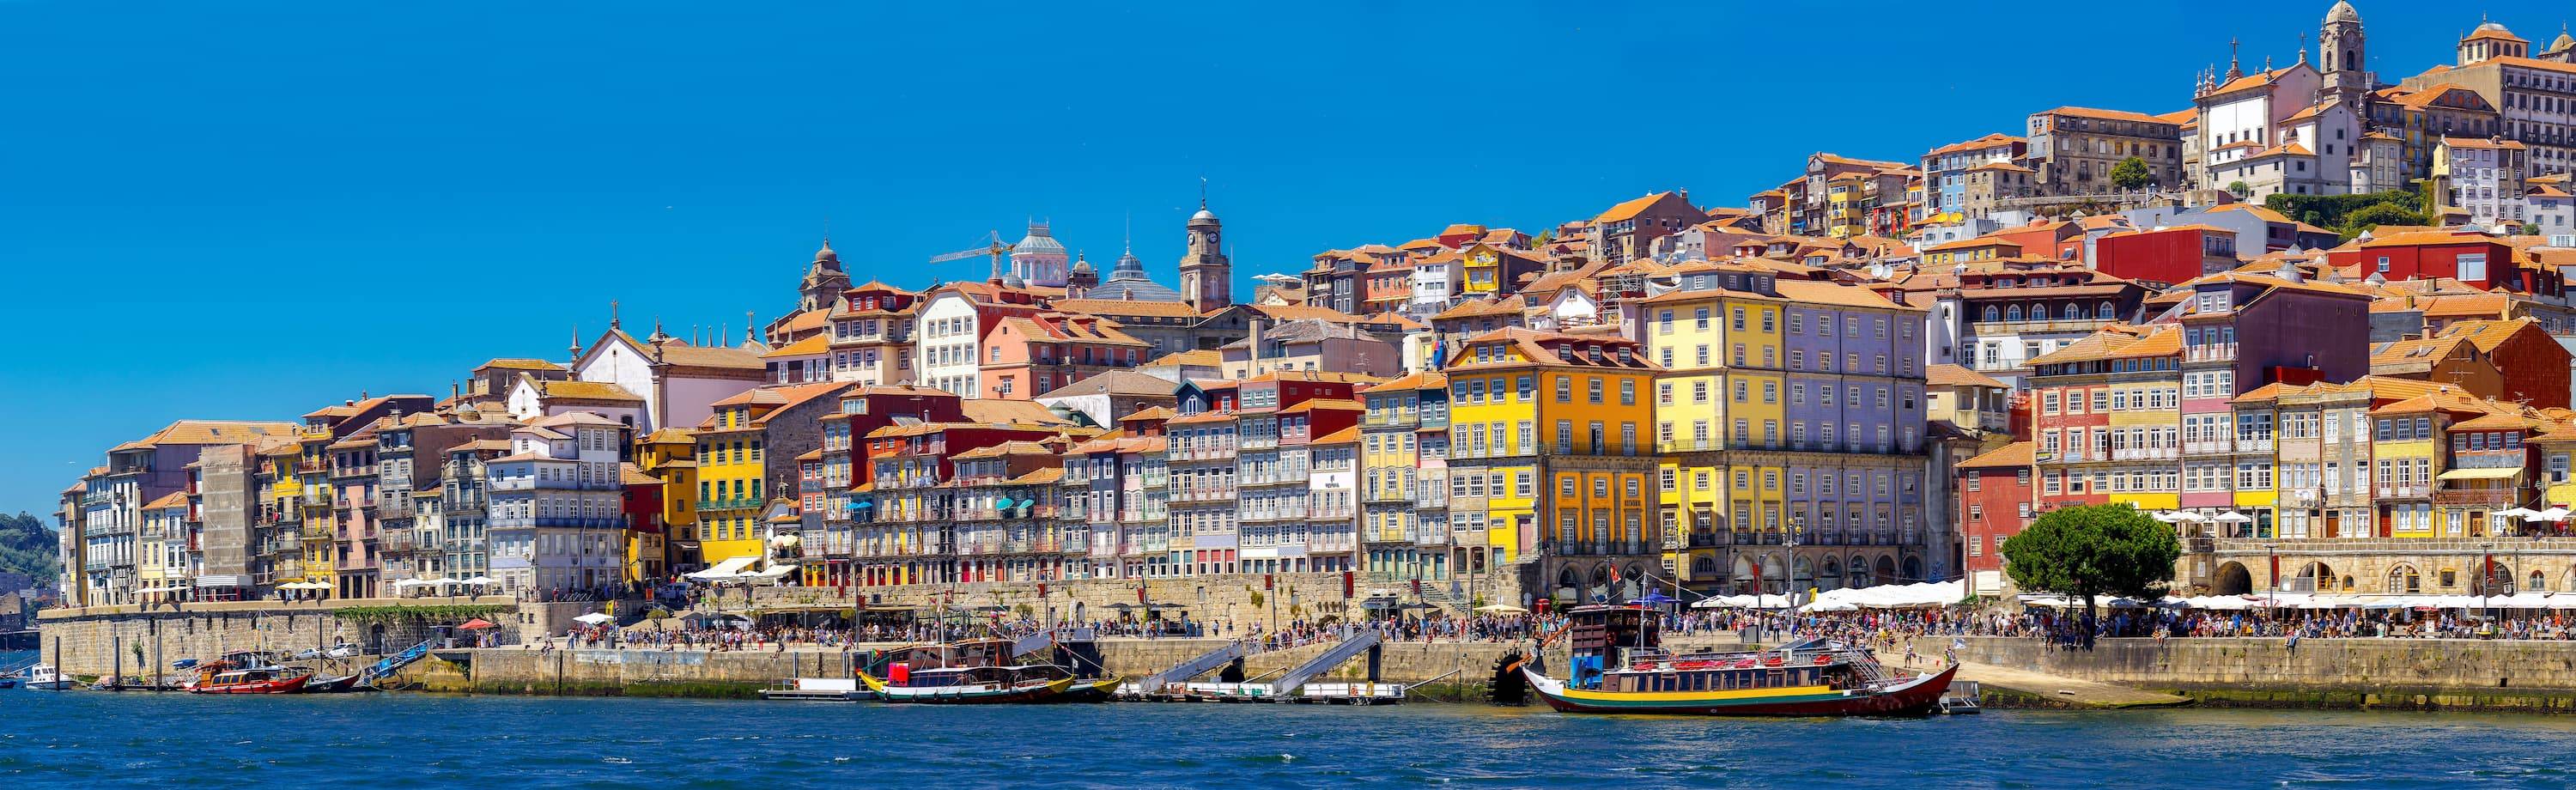 Tour de las Riberas del Douro en Oporto, viaje en barco y visita a bodega